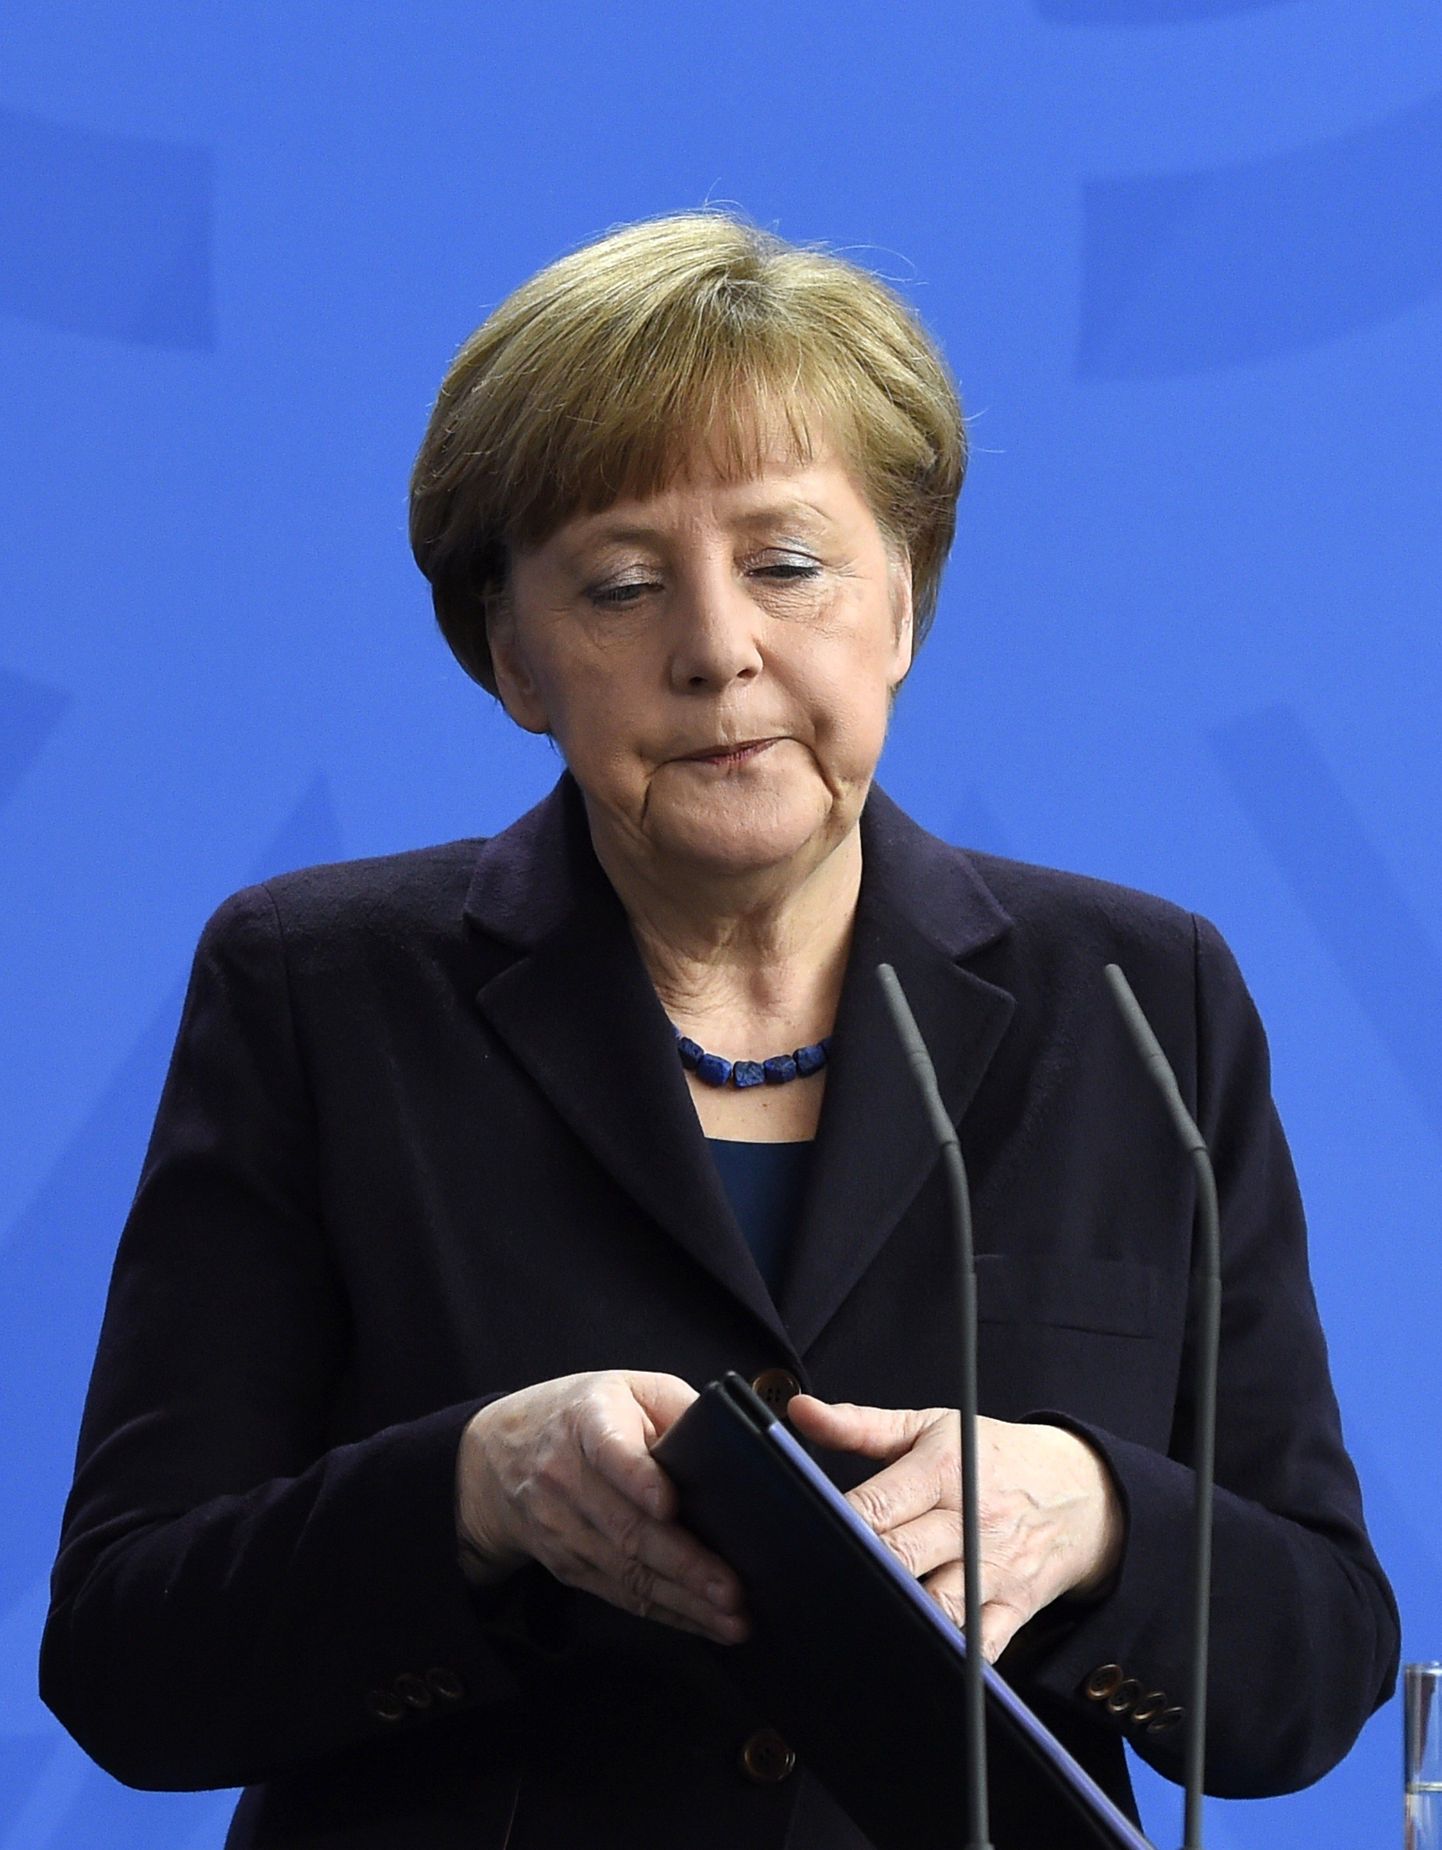 Saksa kantsler Angela Merkel pidas Berliinis täna pressikonverentsi, kus rääkis Prantsusmaal juhtunud lennukatastroofist.